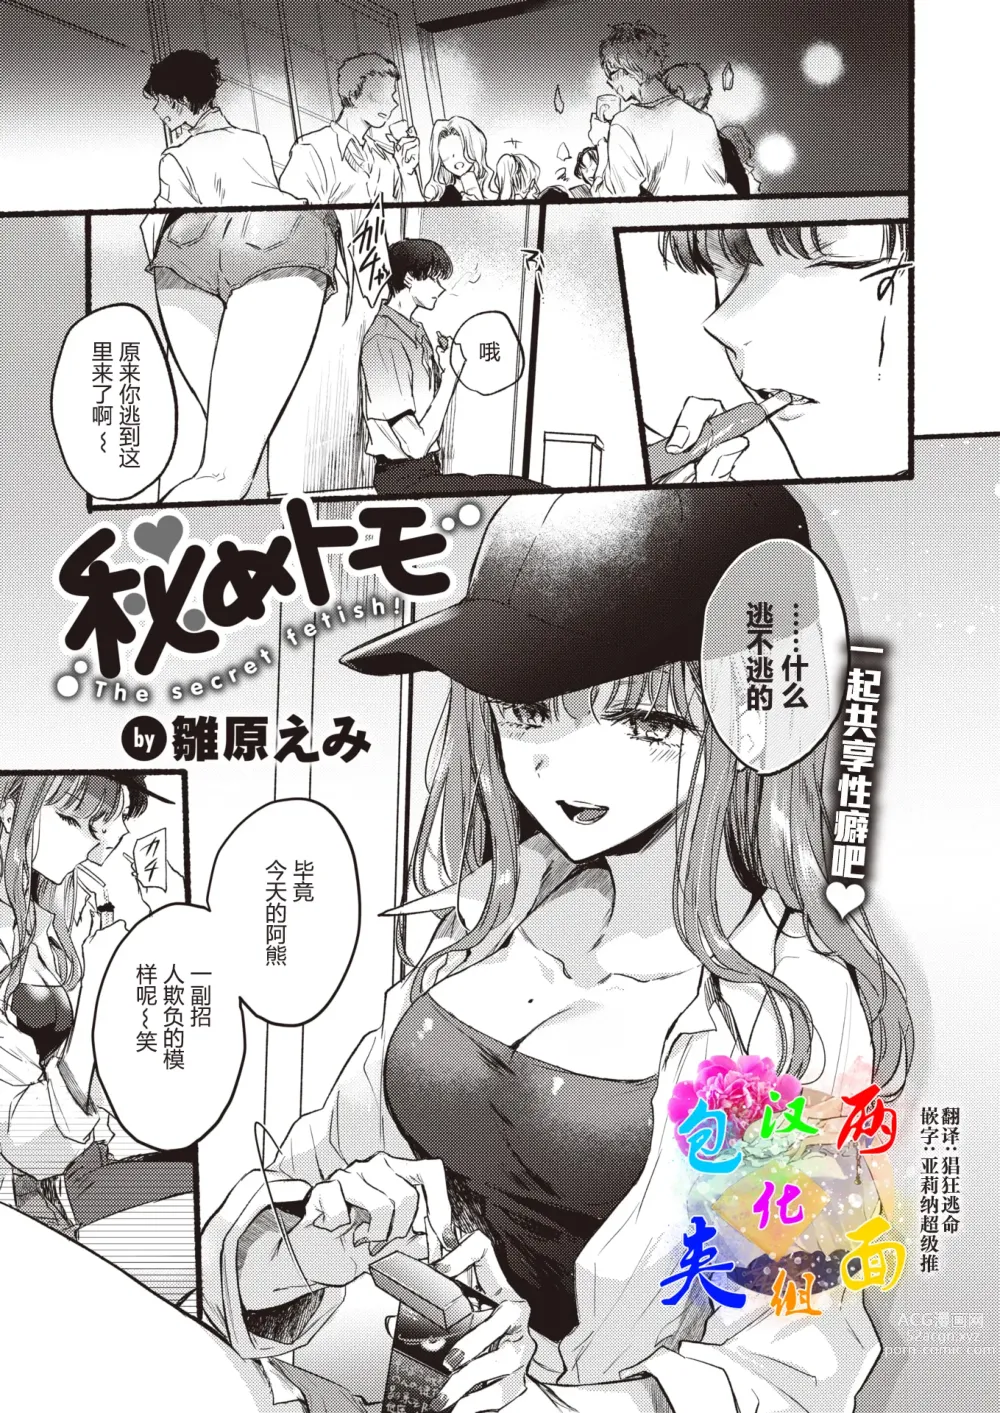 Page 1 of manga Himetomo - The secret fetish!